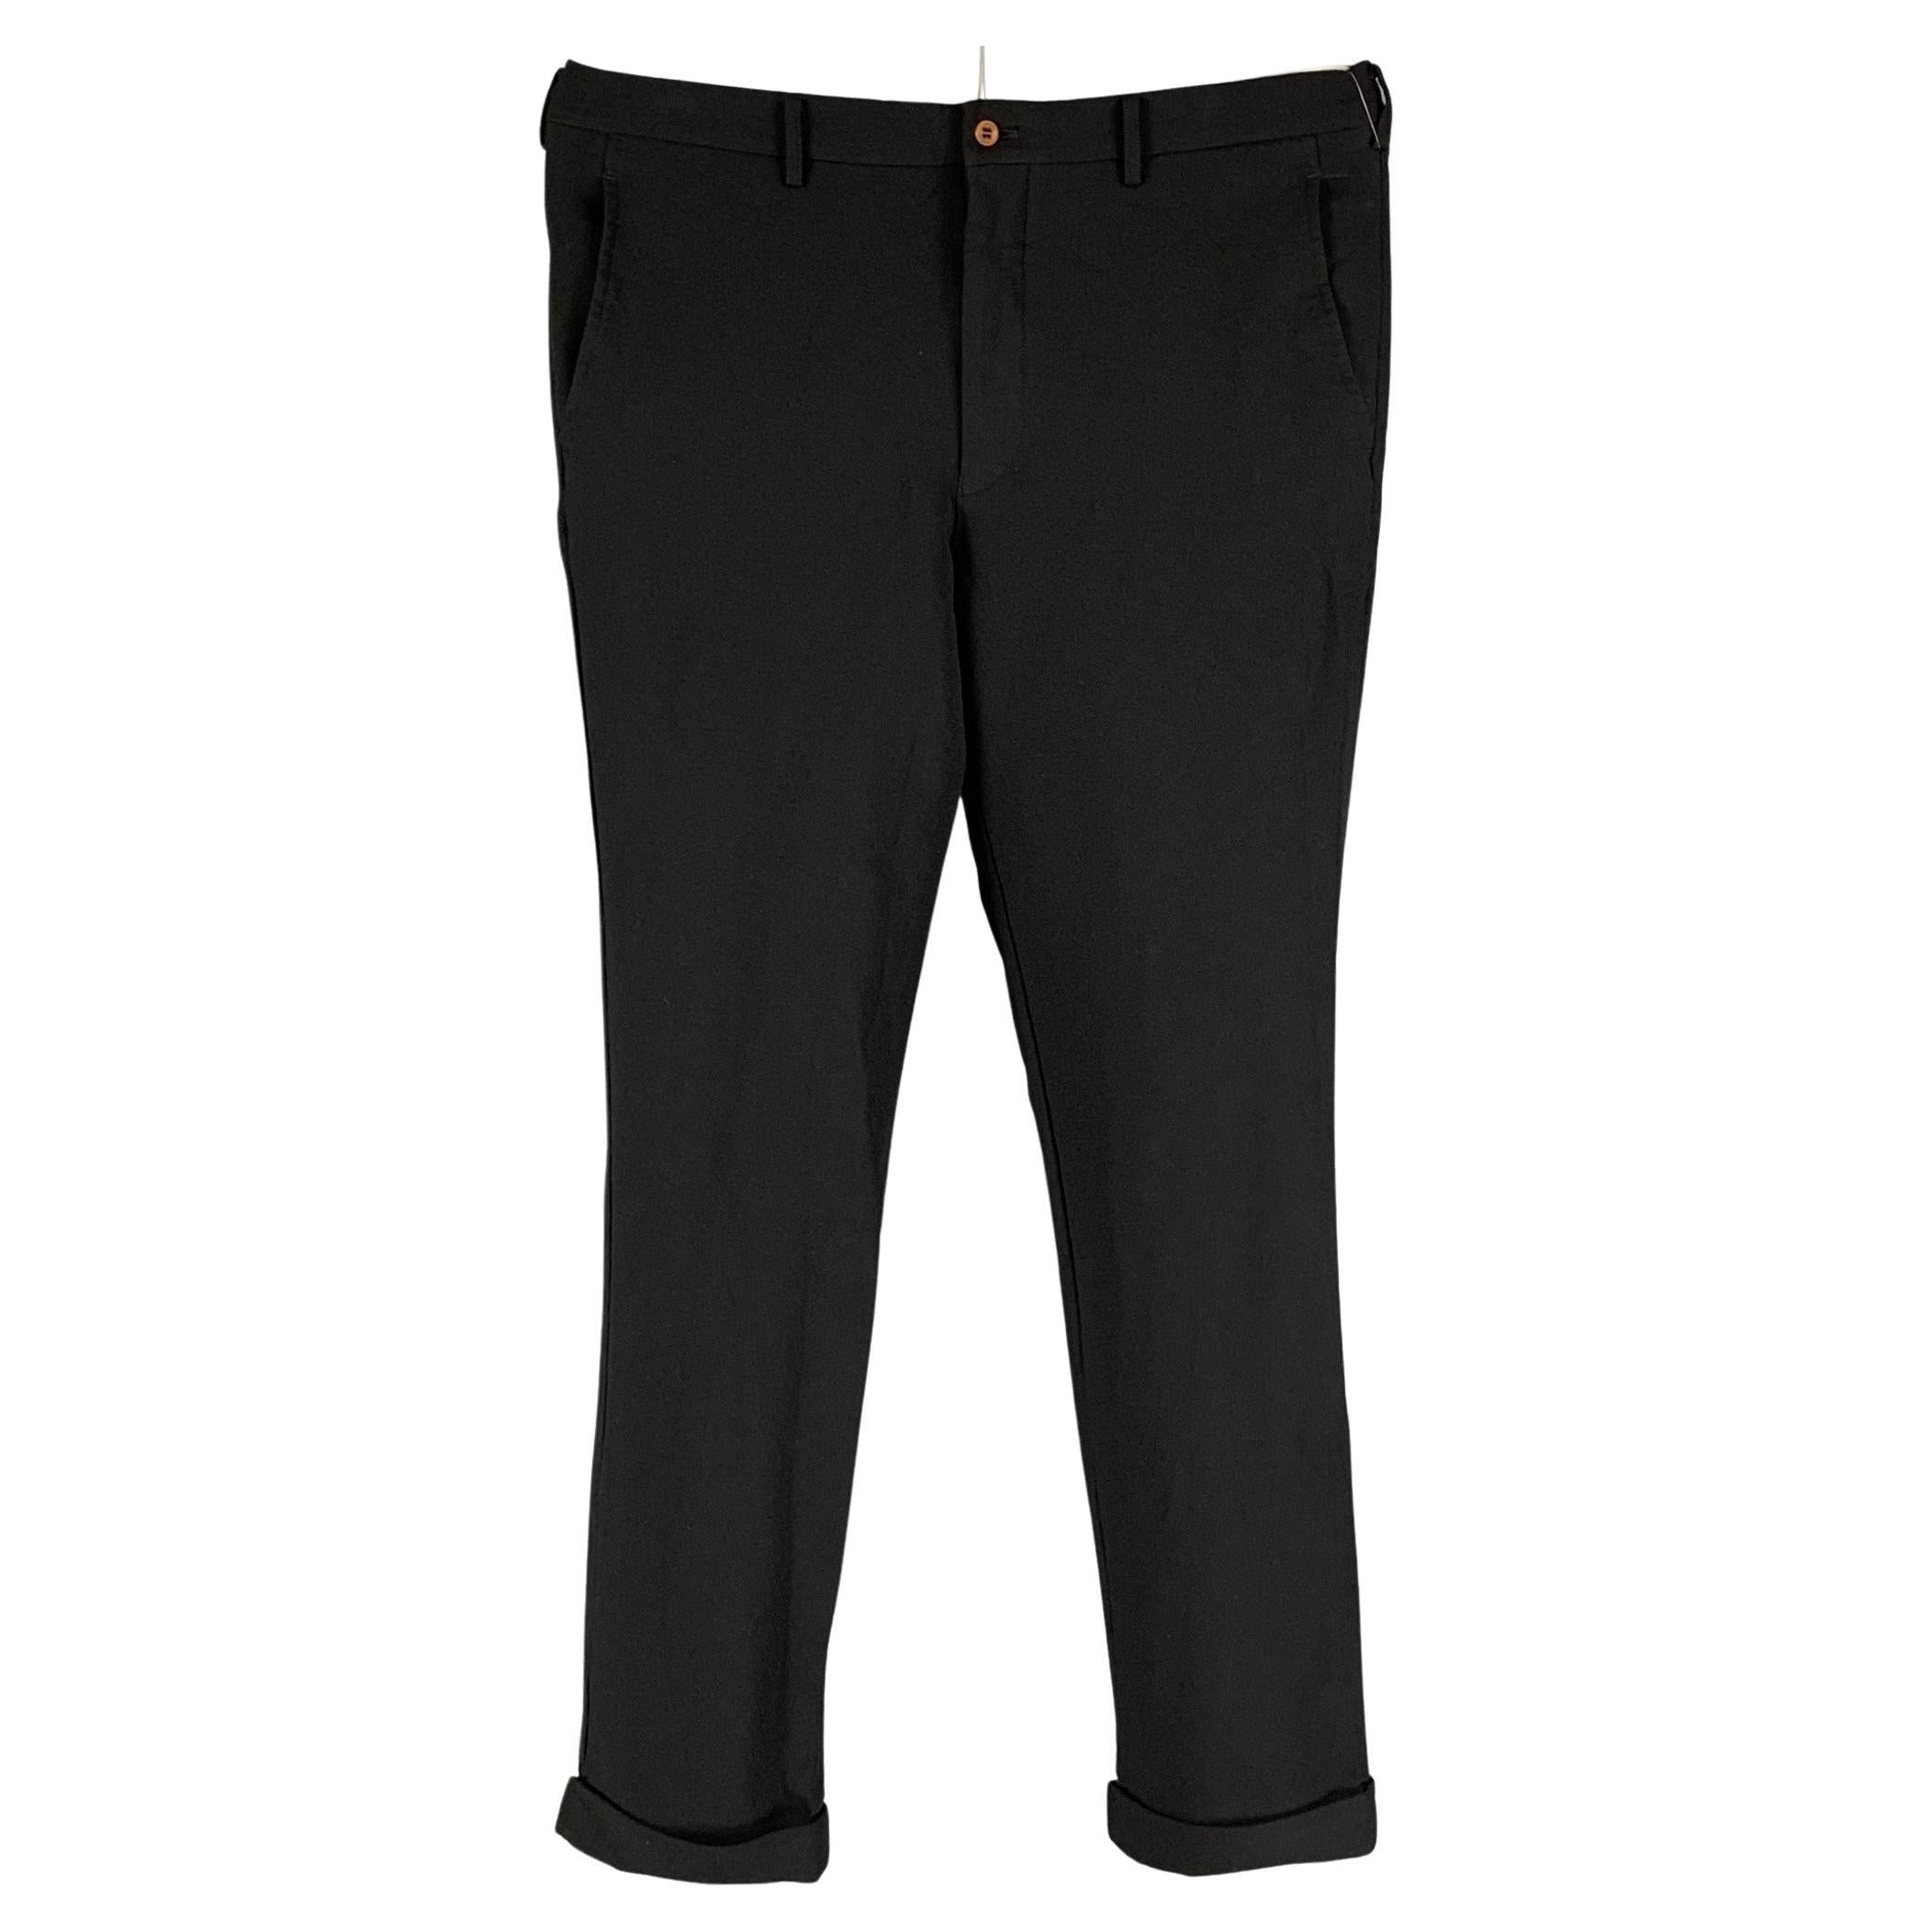 COMME des GARCONS HOMME PLUS Size XL Black Solid Polyester Dress Pants